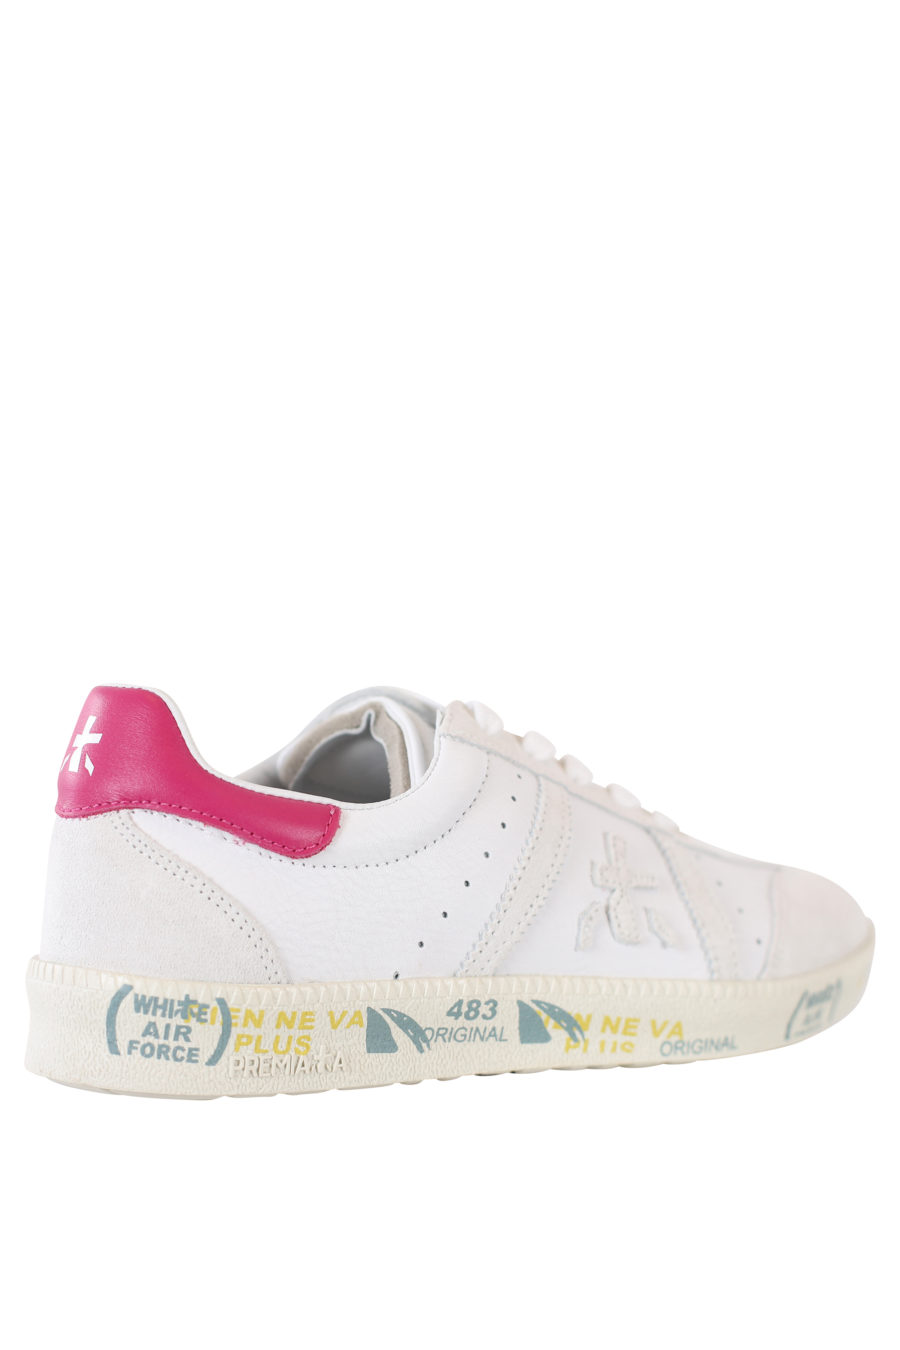 Zapatillas blancas con detalle rosa "Bonnied" - IMG 2184